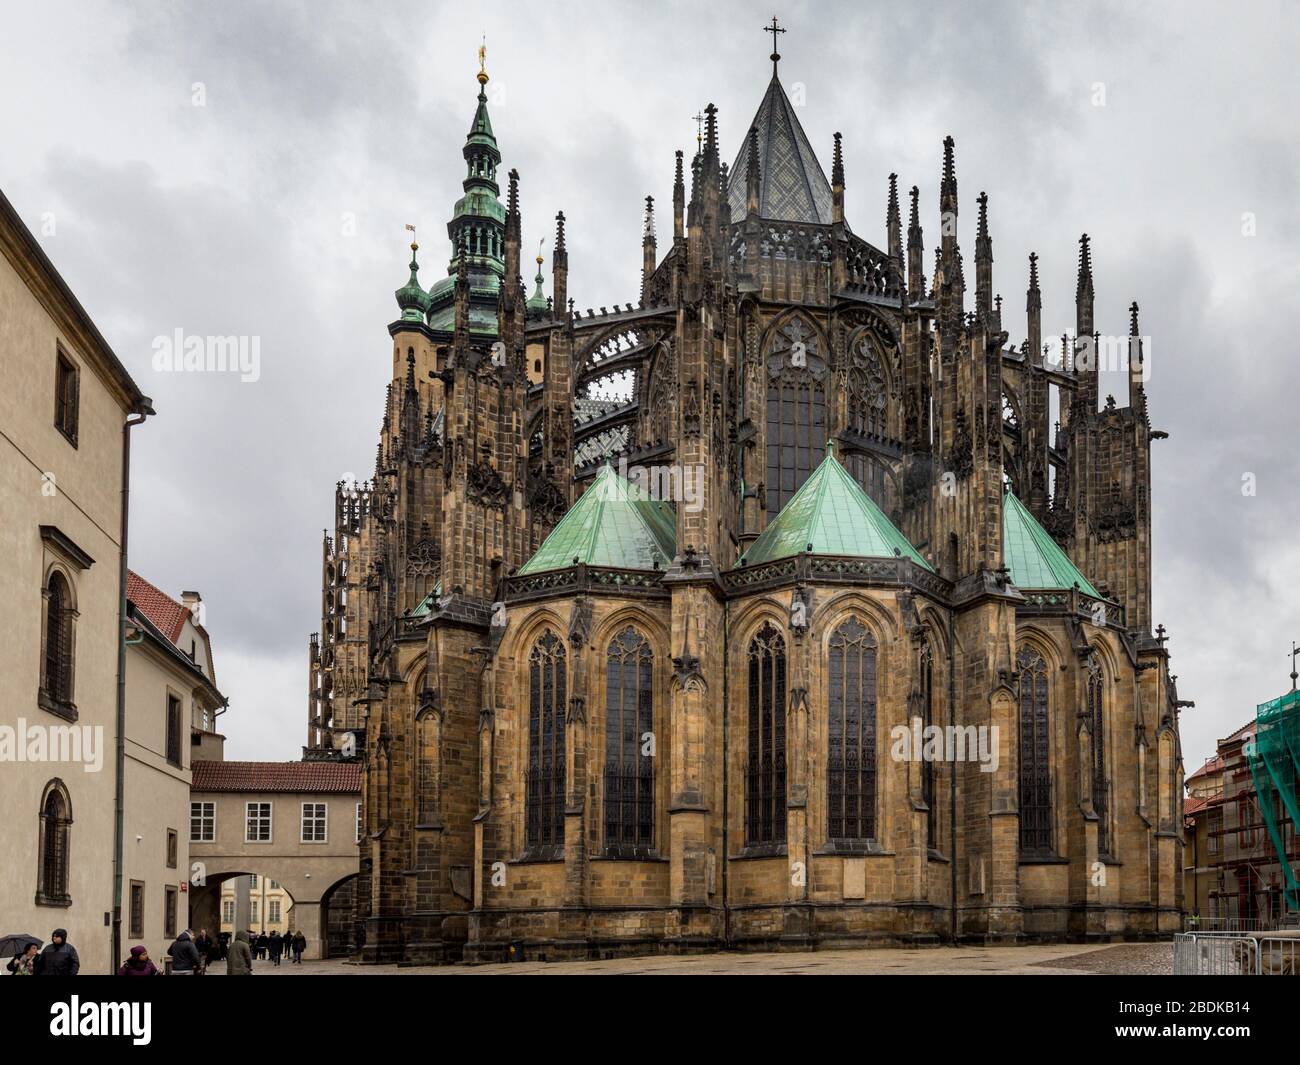 Cathédrale Saint-Vitus. Cette cathédrale gothique se trouve dans le centre du château de Prague, surplombant la ville. Banque D'Images